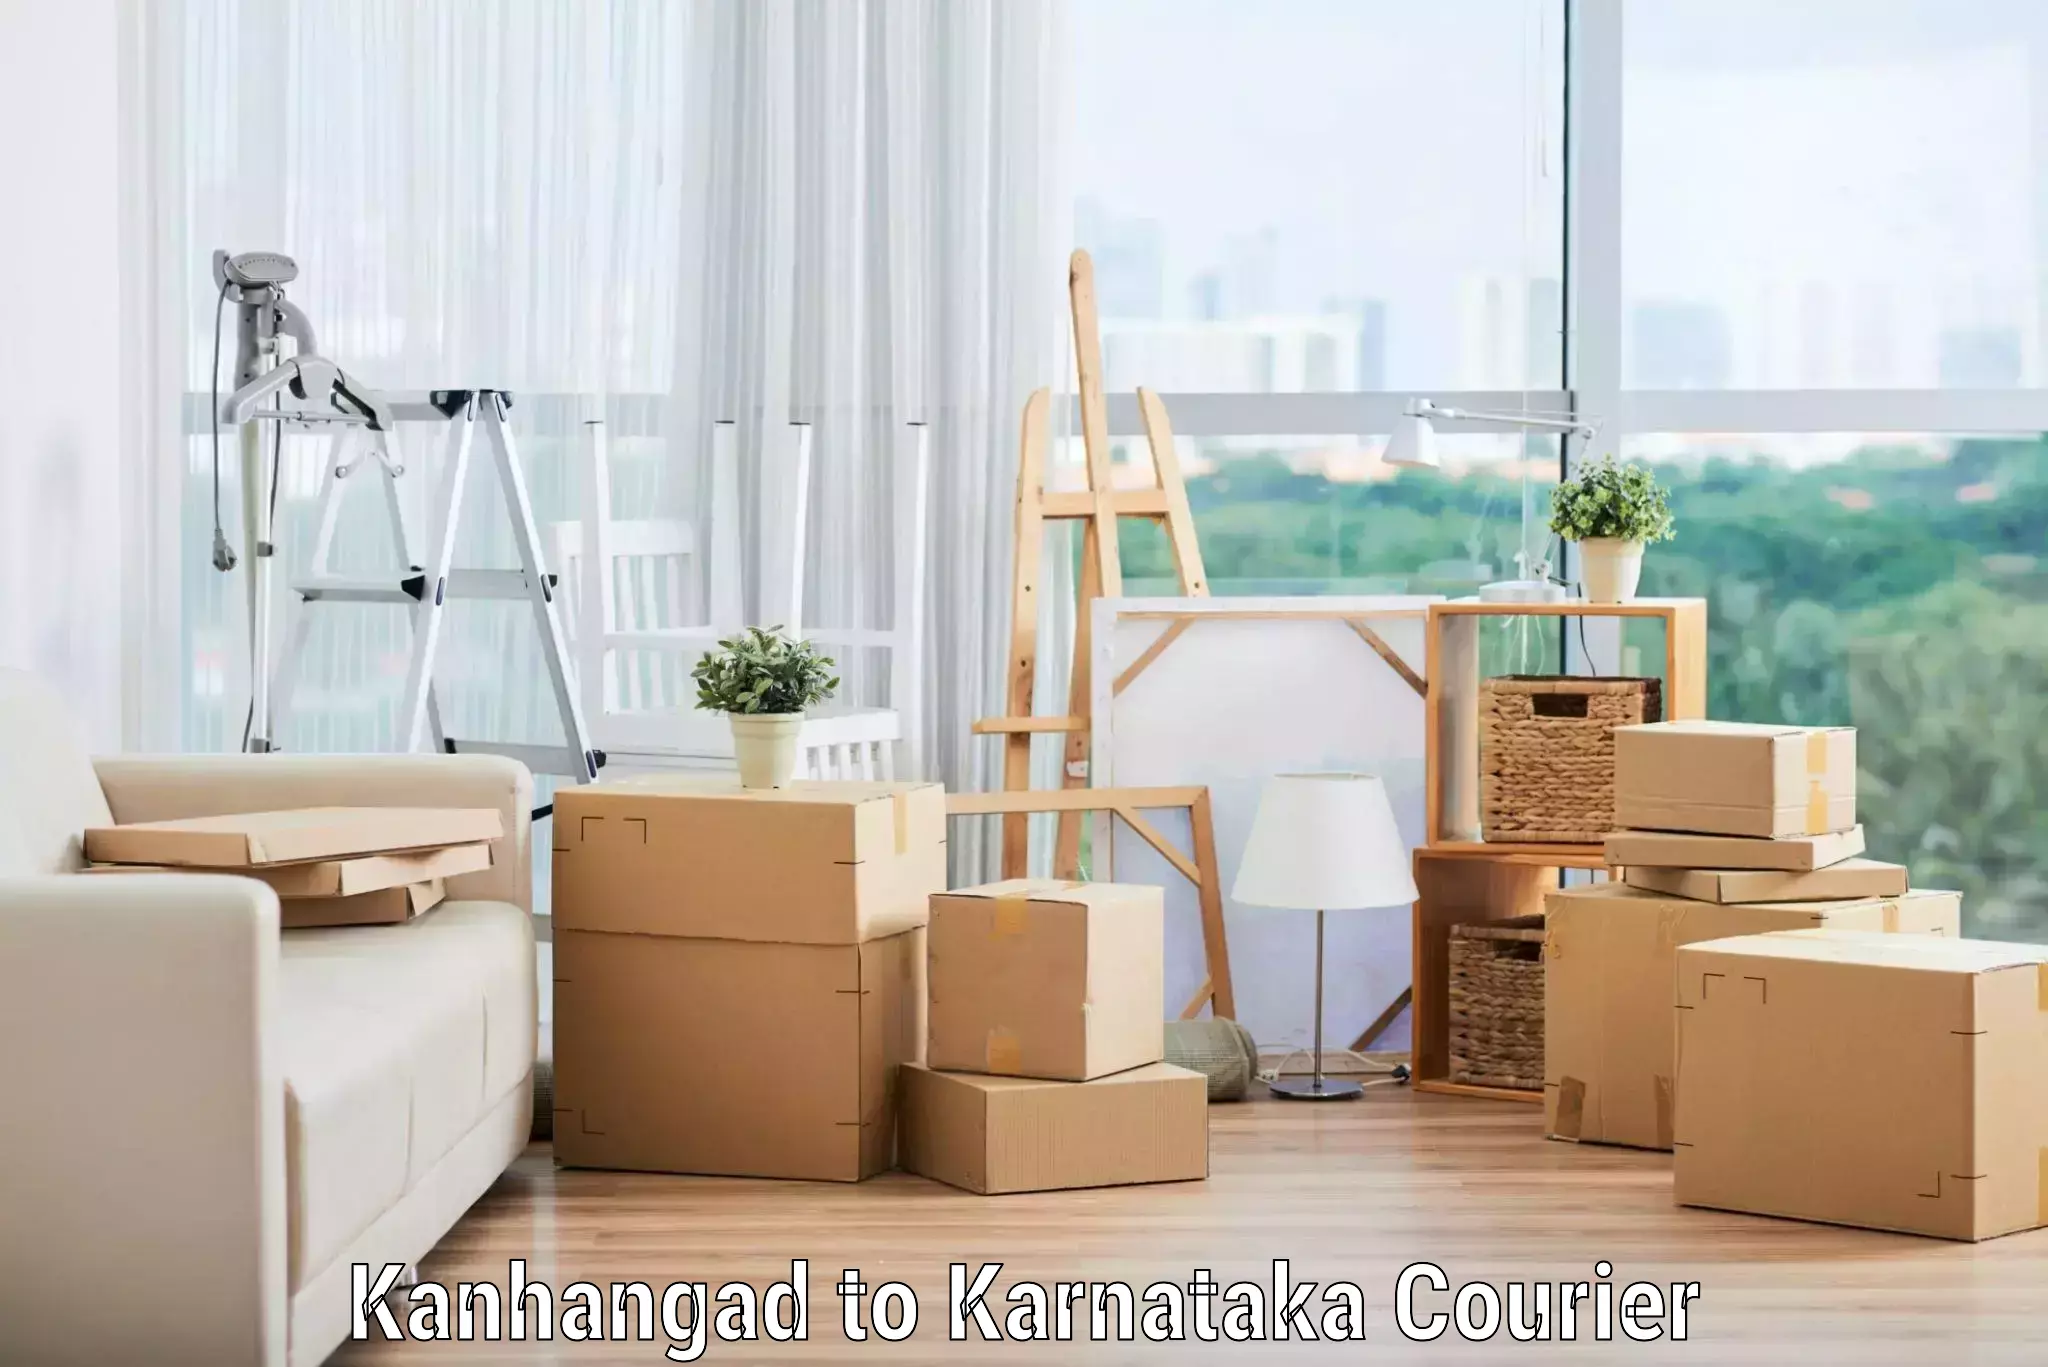 Moving and handling services Kanhangad to Basavanagudi